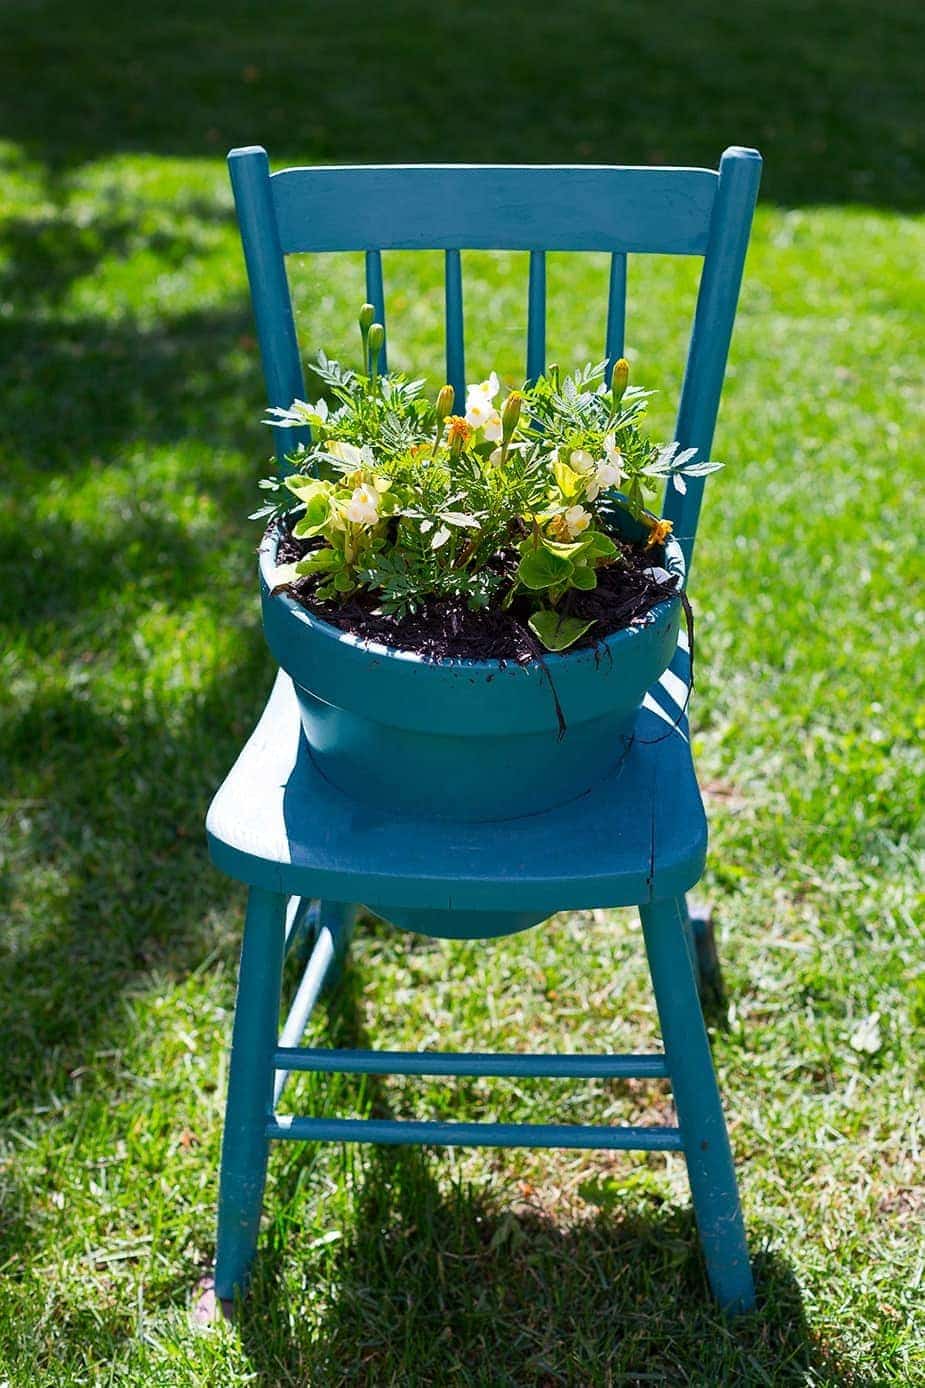 Una vecchia sedia ridipinta di blu con un foro circolare sul sedile, nel quale è infilato un vaso dello stesso colore della sedia, con una pianta all'interno